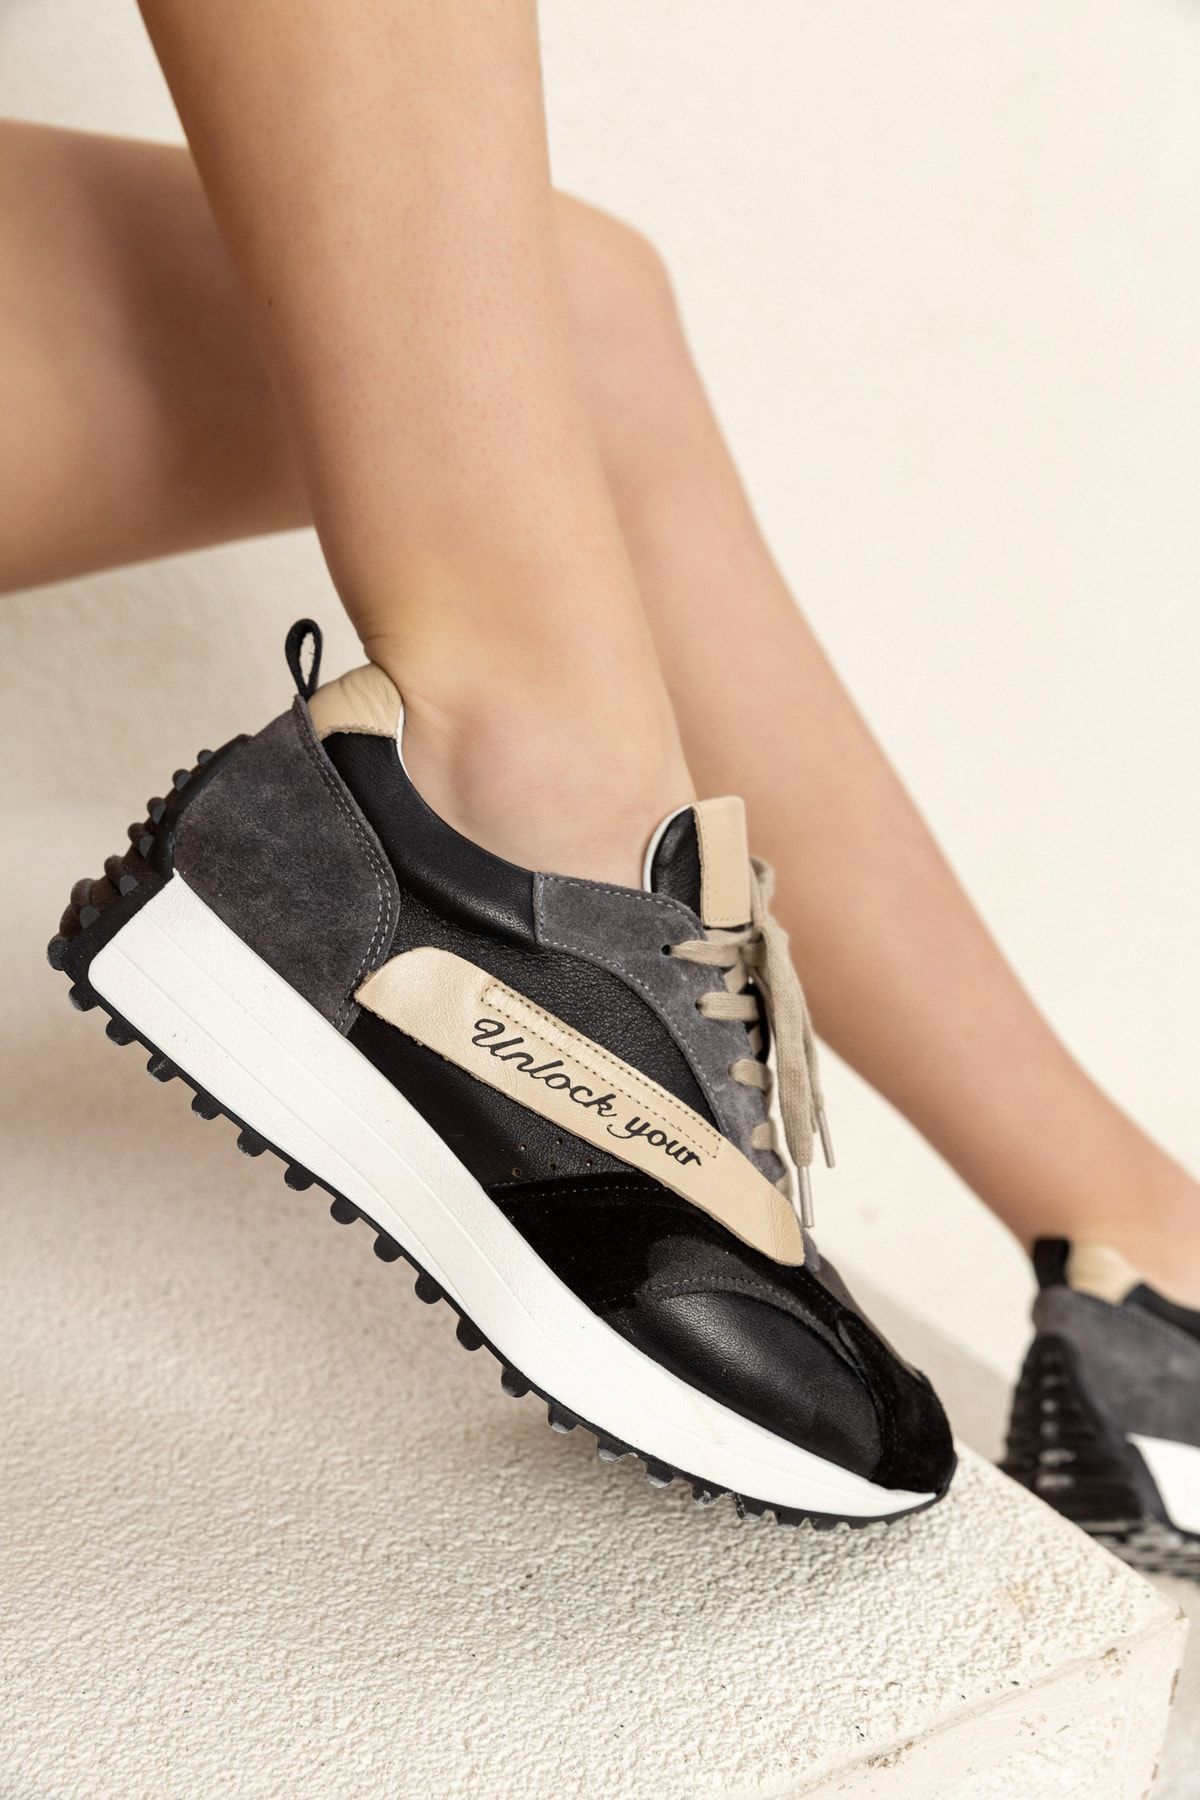 Tindirella Kadın Siyah Günlük Rahat Spor Ayakkabı Sneaker Hakiki Deri Yürüyüş Koşu Ayakkabı 4cm Ortapedik